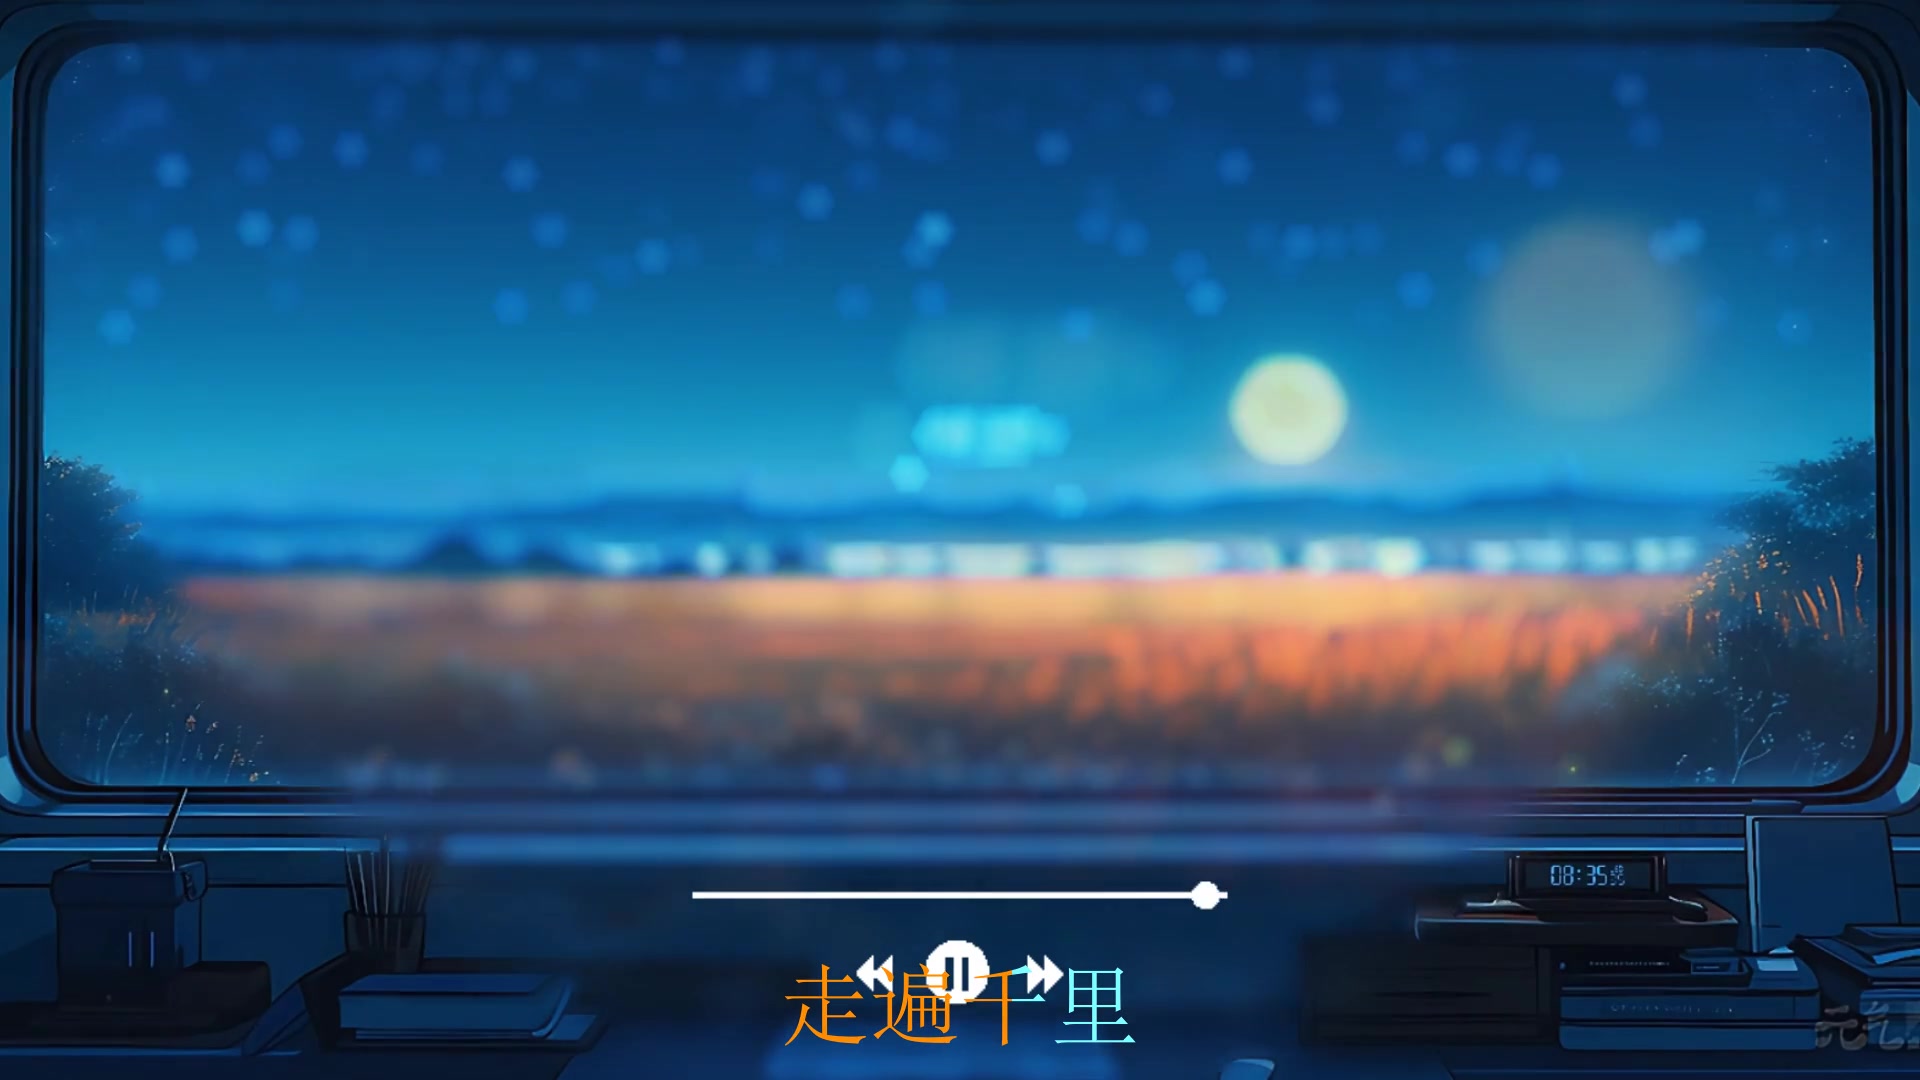 [图]【无损音质 高音歌曲】精选100首超好听的中文歌曲合集 值得你循环听的经典音乐合集